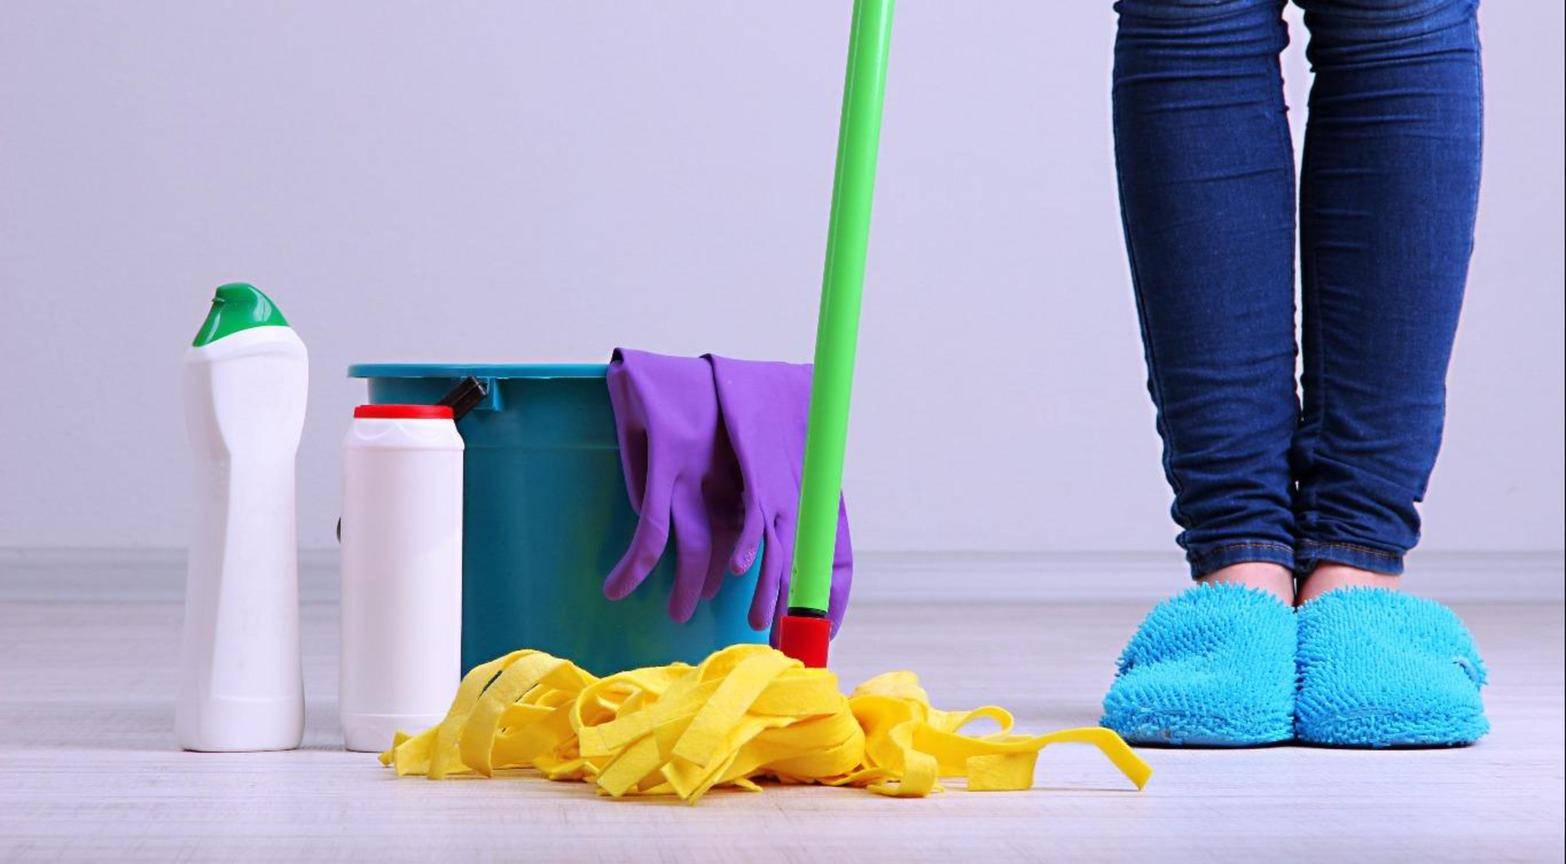 Блог веры зайцевойбезопасная уборка дома.основных принципы безопасной уборки.
безопасная уборка дома.основных принципы безопасной уборки.